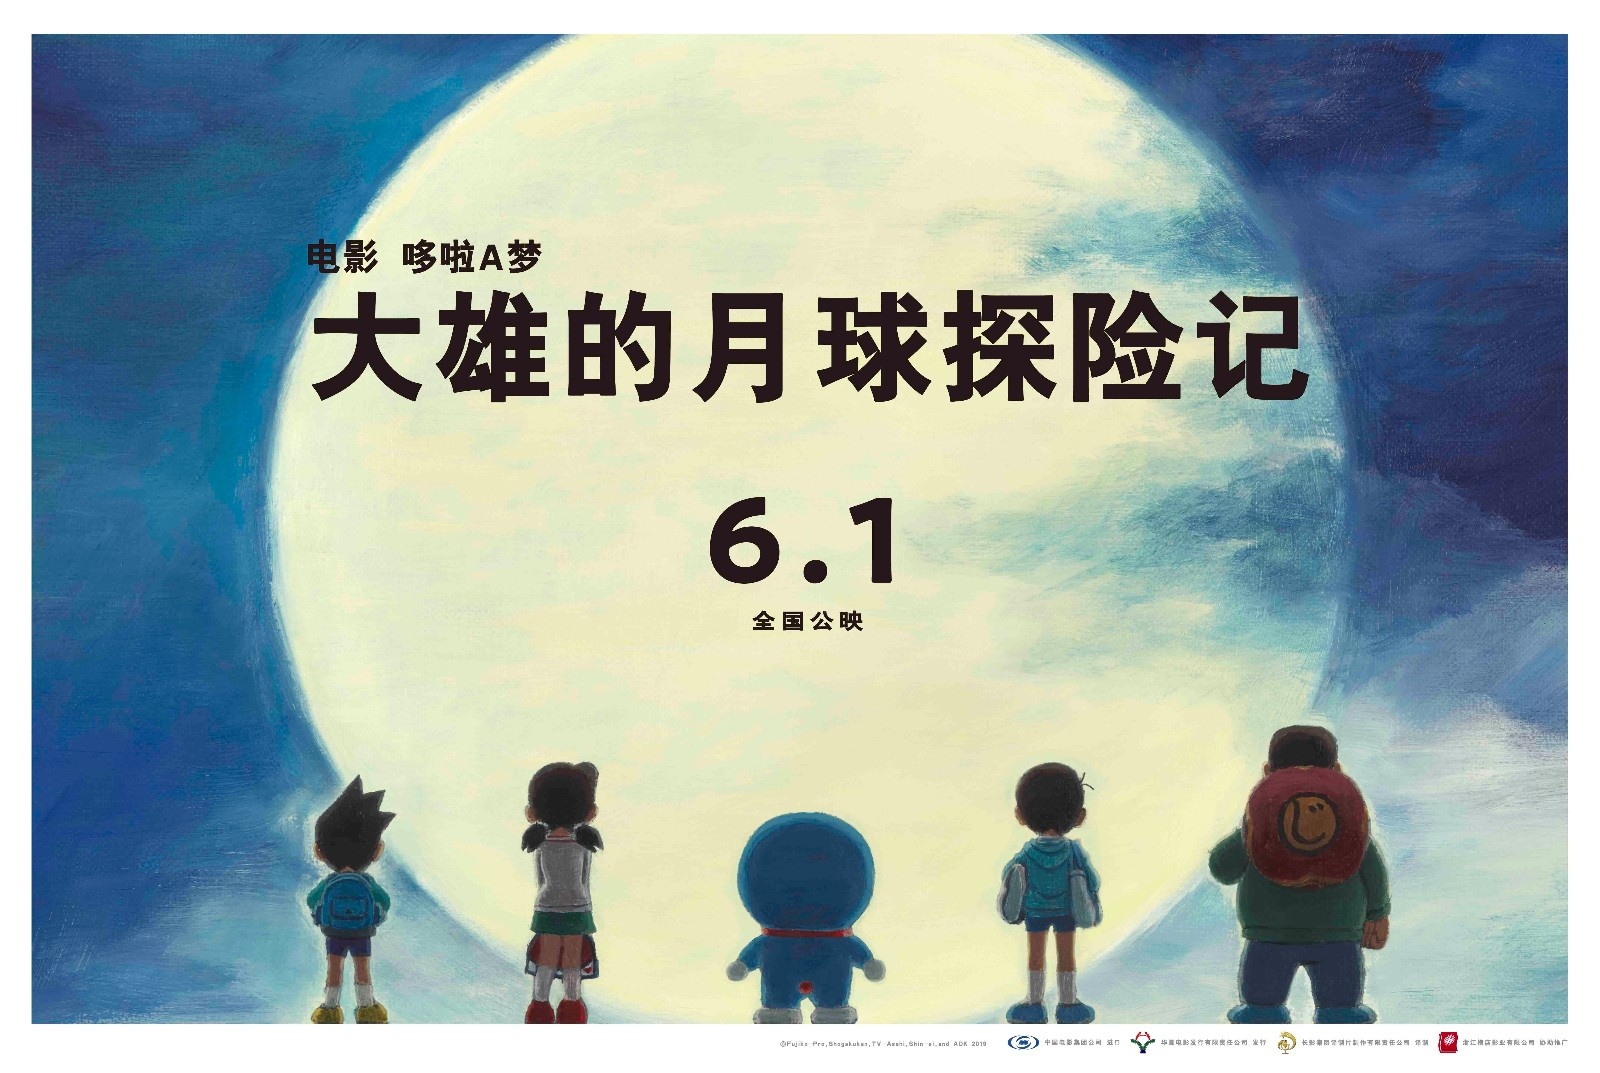 《哆啦A梦》剧场版曝“遥望月亮”版手绘海报